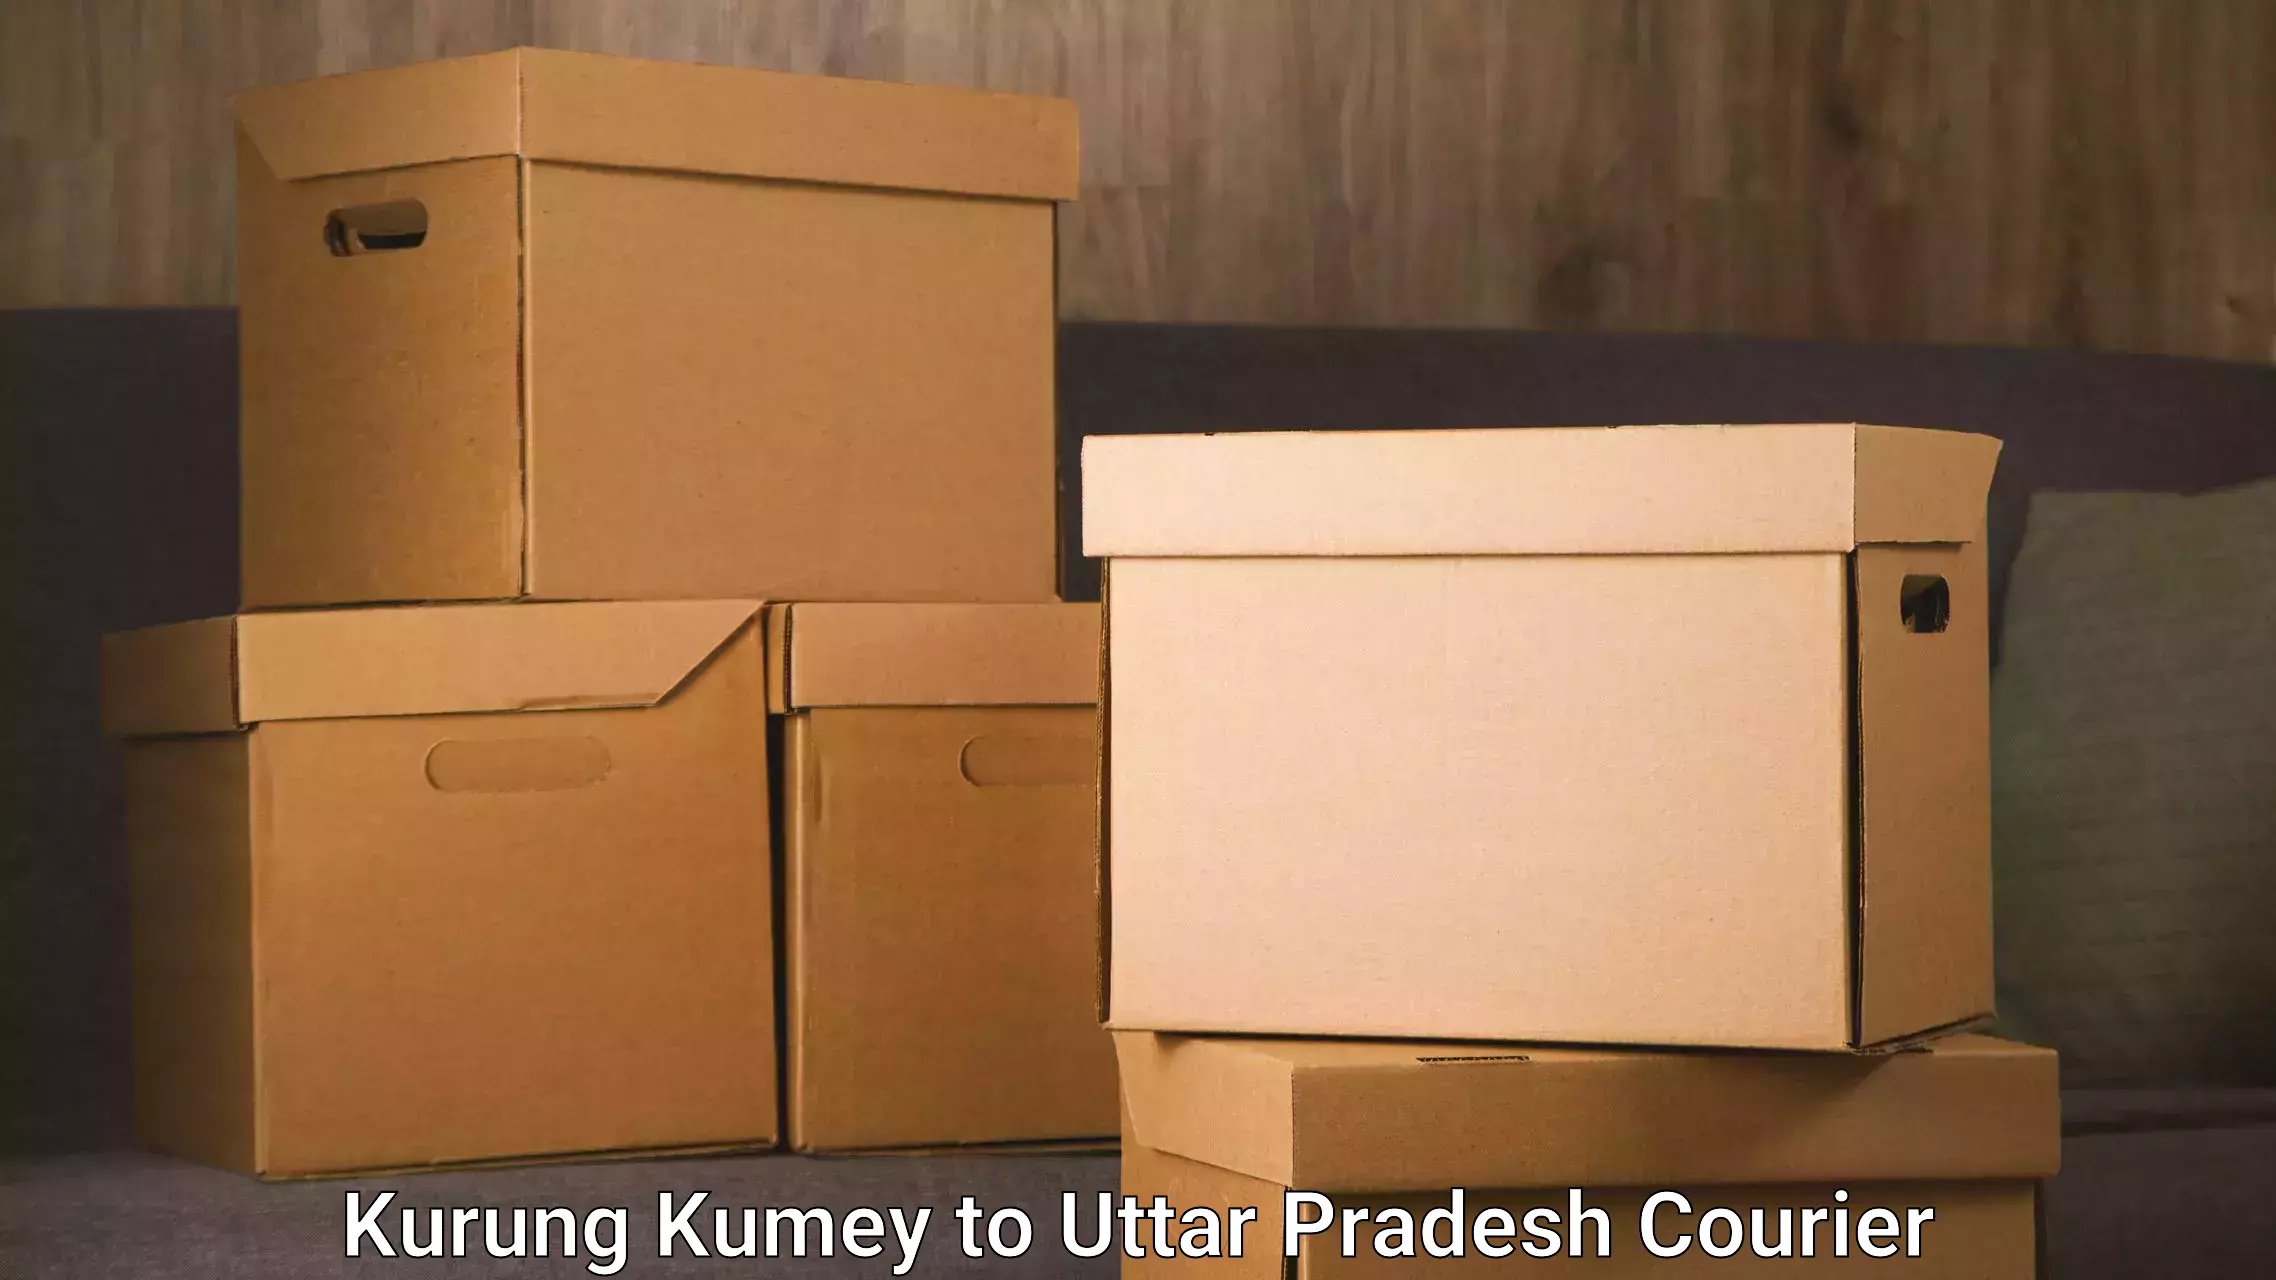 On-call courier service Kurung Kumey to Uttar Pradesh